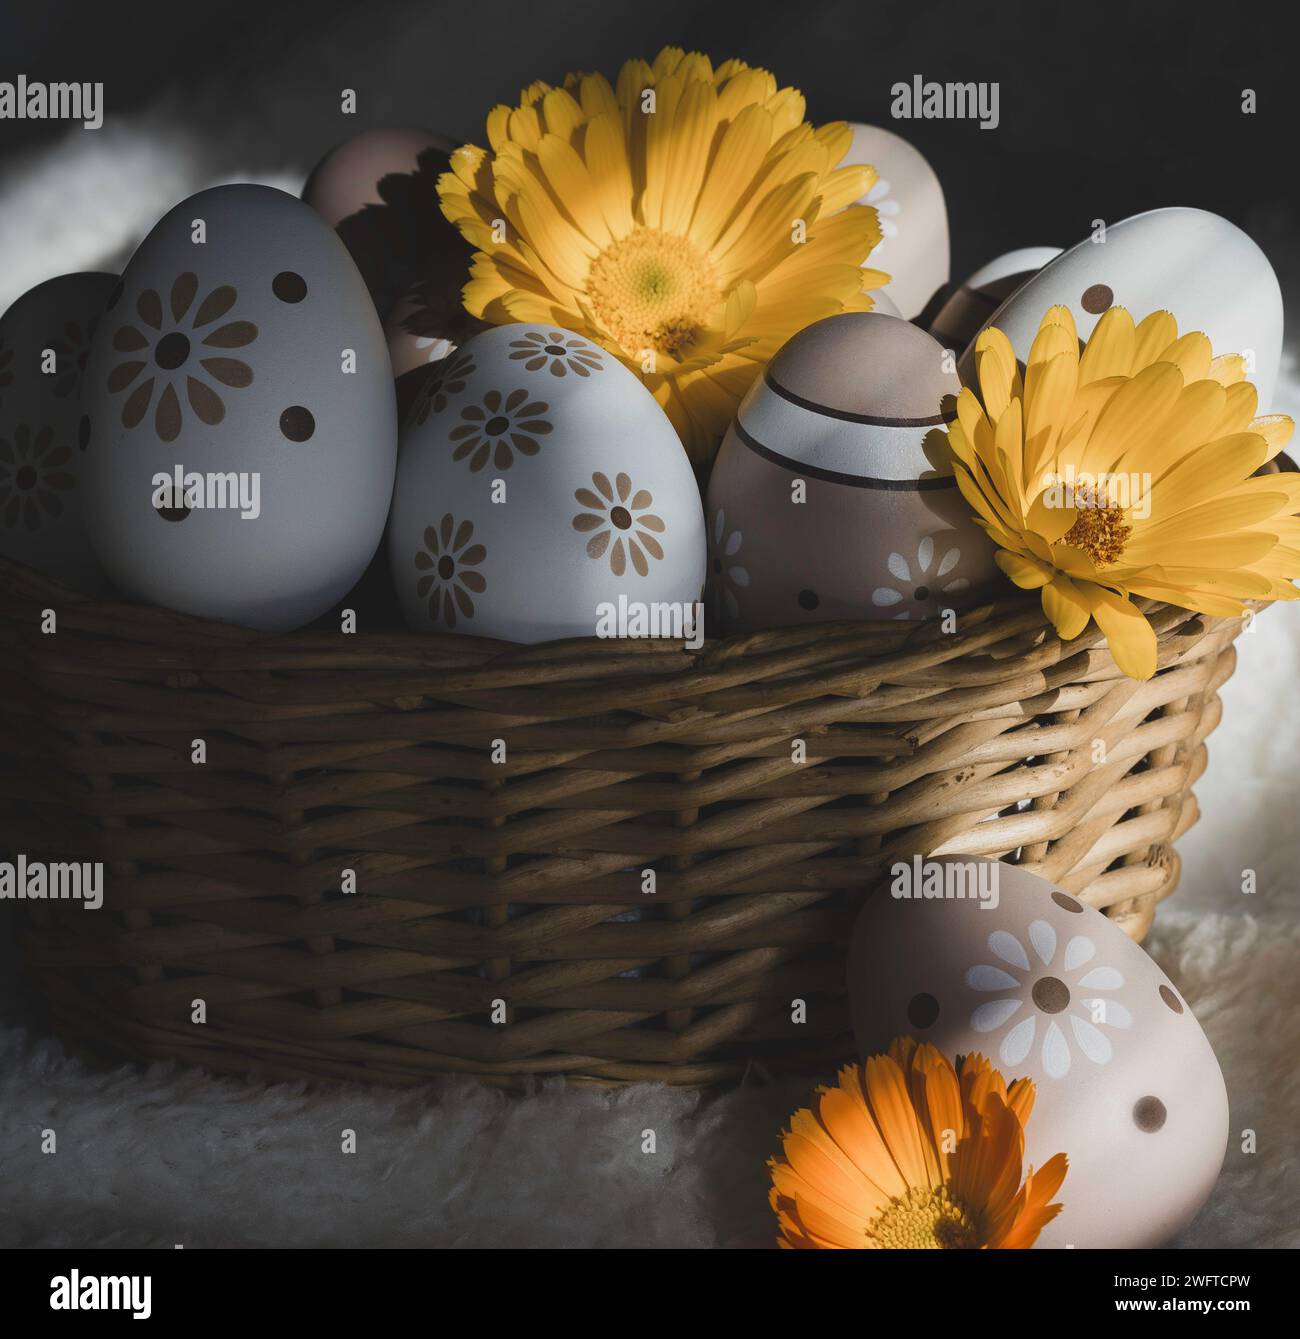 Gemalte ostereier in einem Korb auf einem weichen weißen Hintergrund mit Ringelblumen unter schattigem Licht Stockfoto